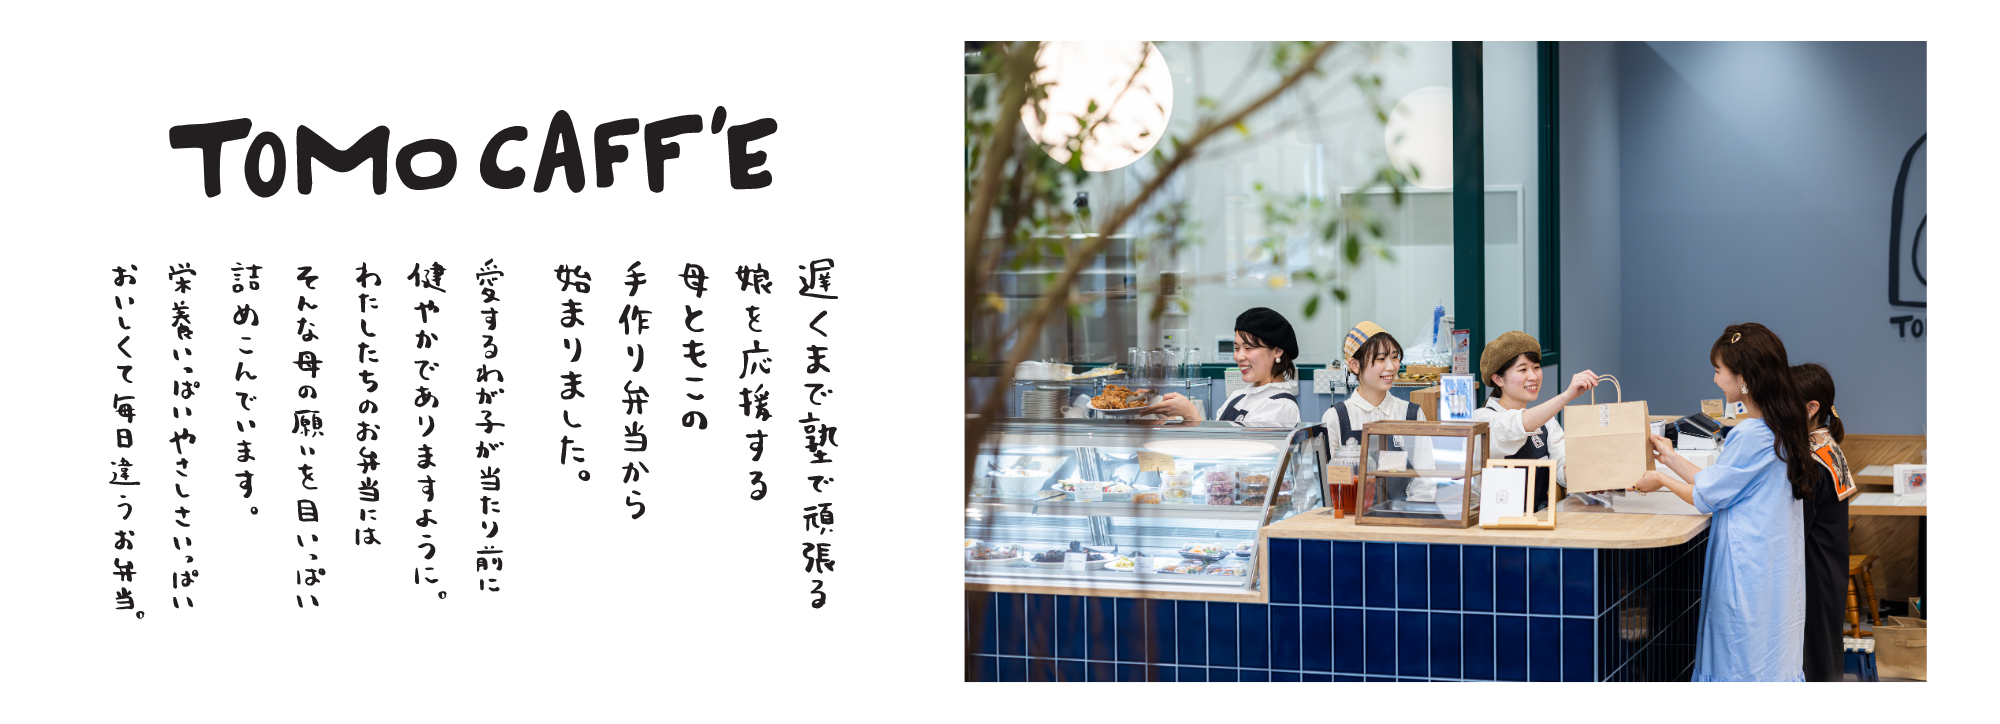 TOMO CAFF'E　トモカフェ